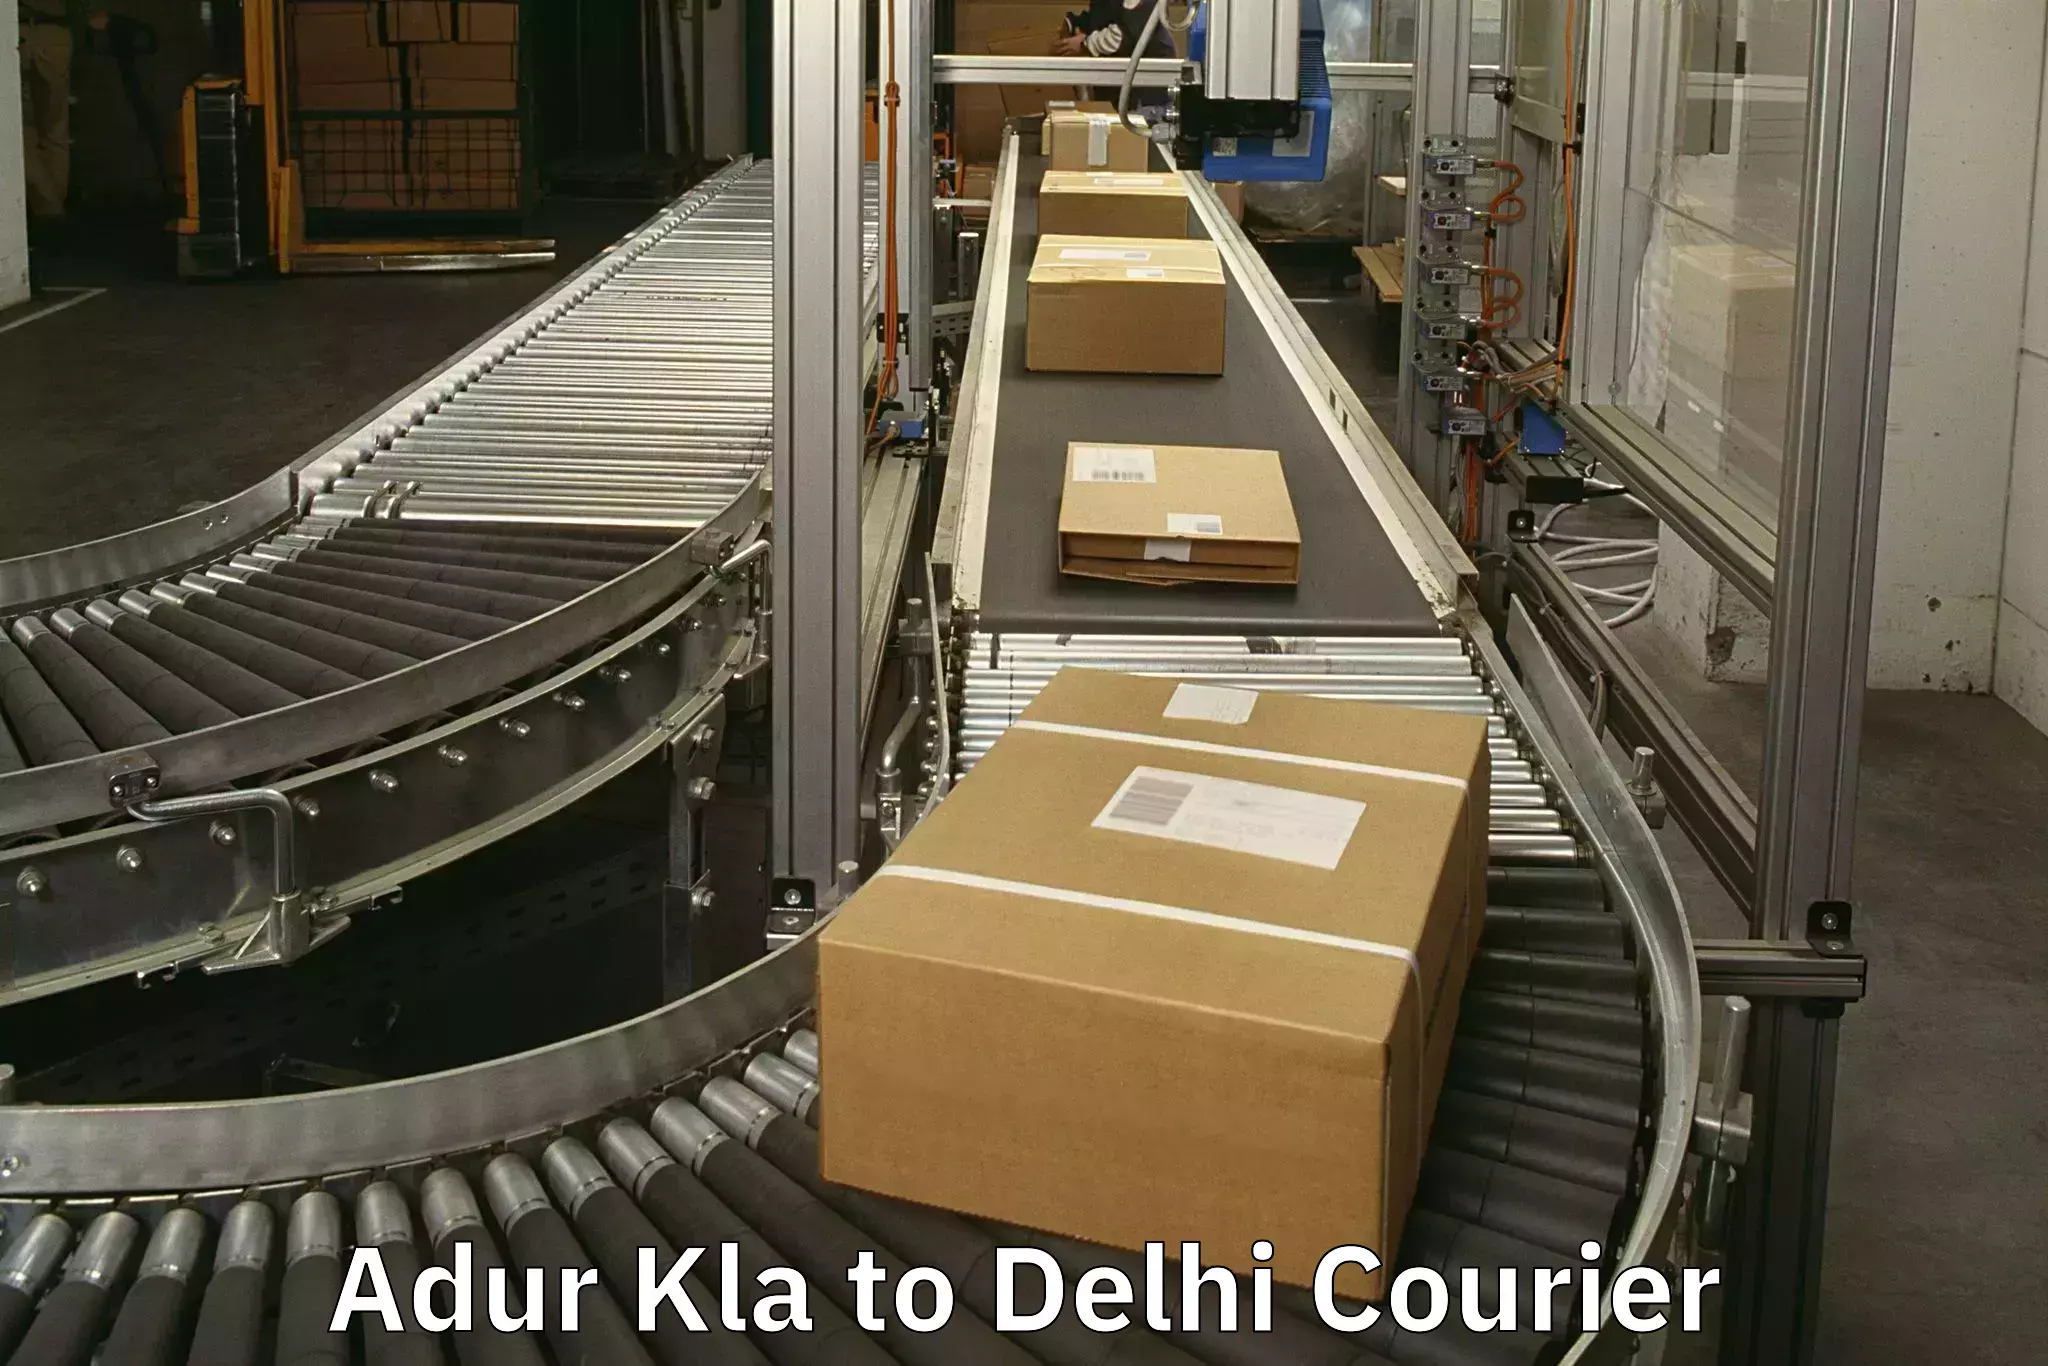 Luggage shipment tracking Adur Kla to Delhi